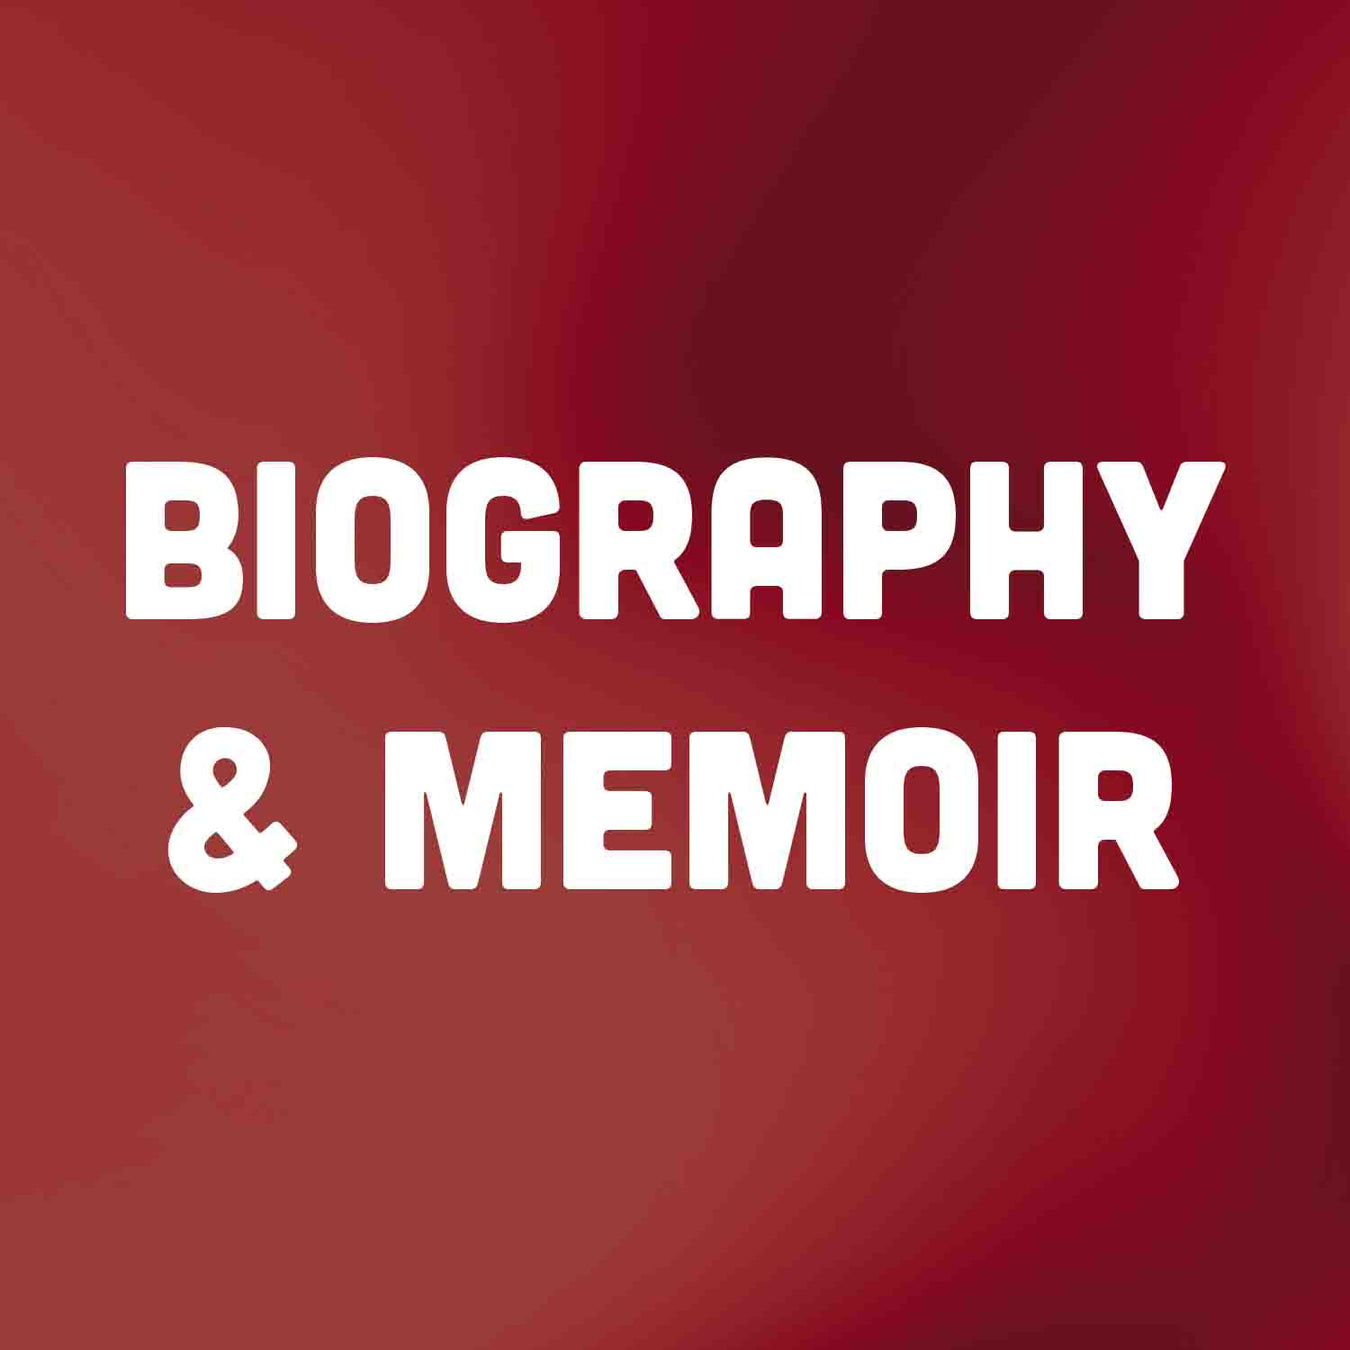 Biography & Memoir Books